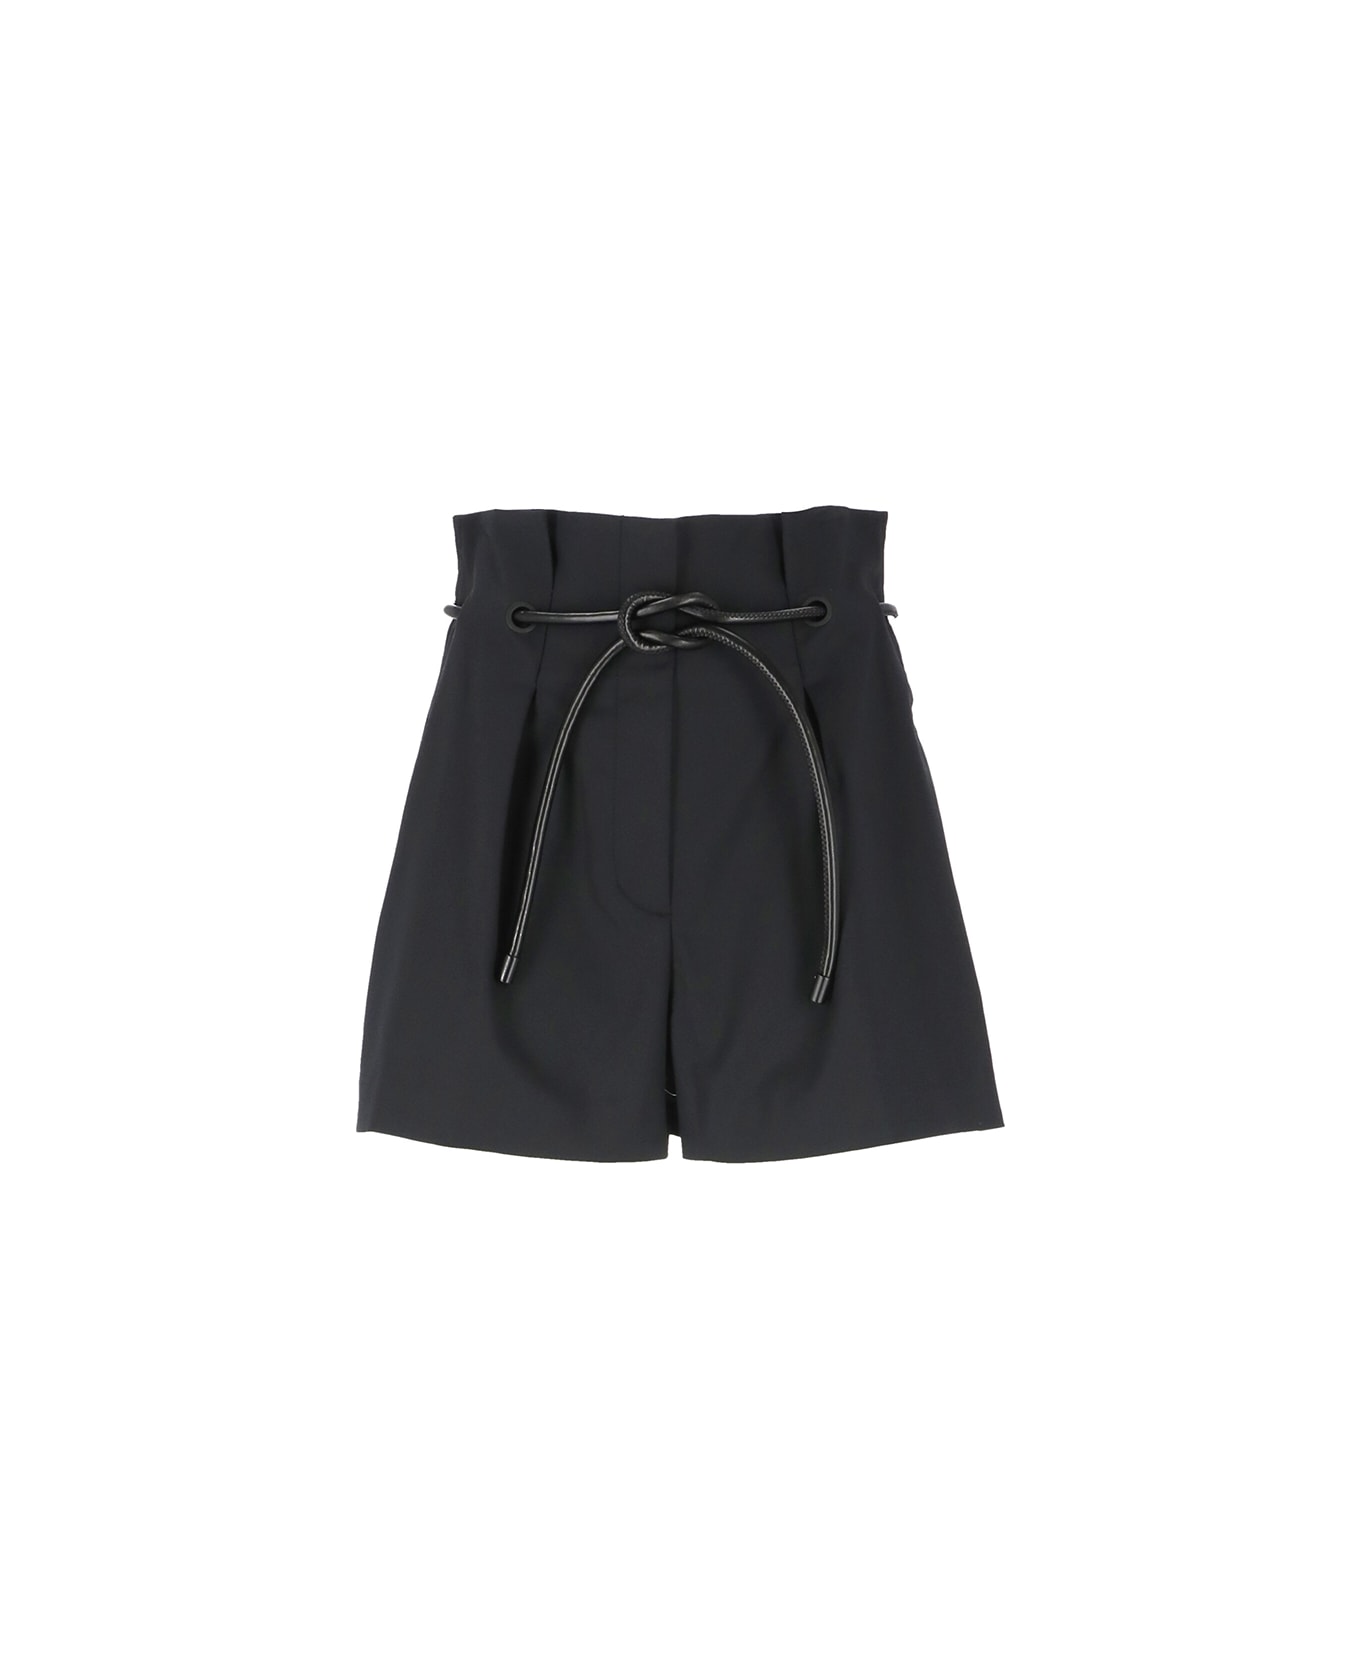 3.1 Phillip Lim Cotton Shorts - Black